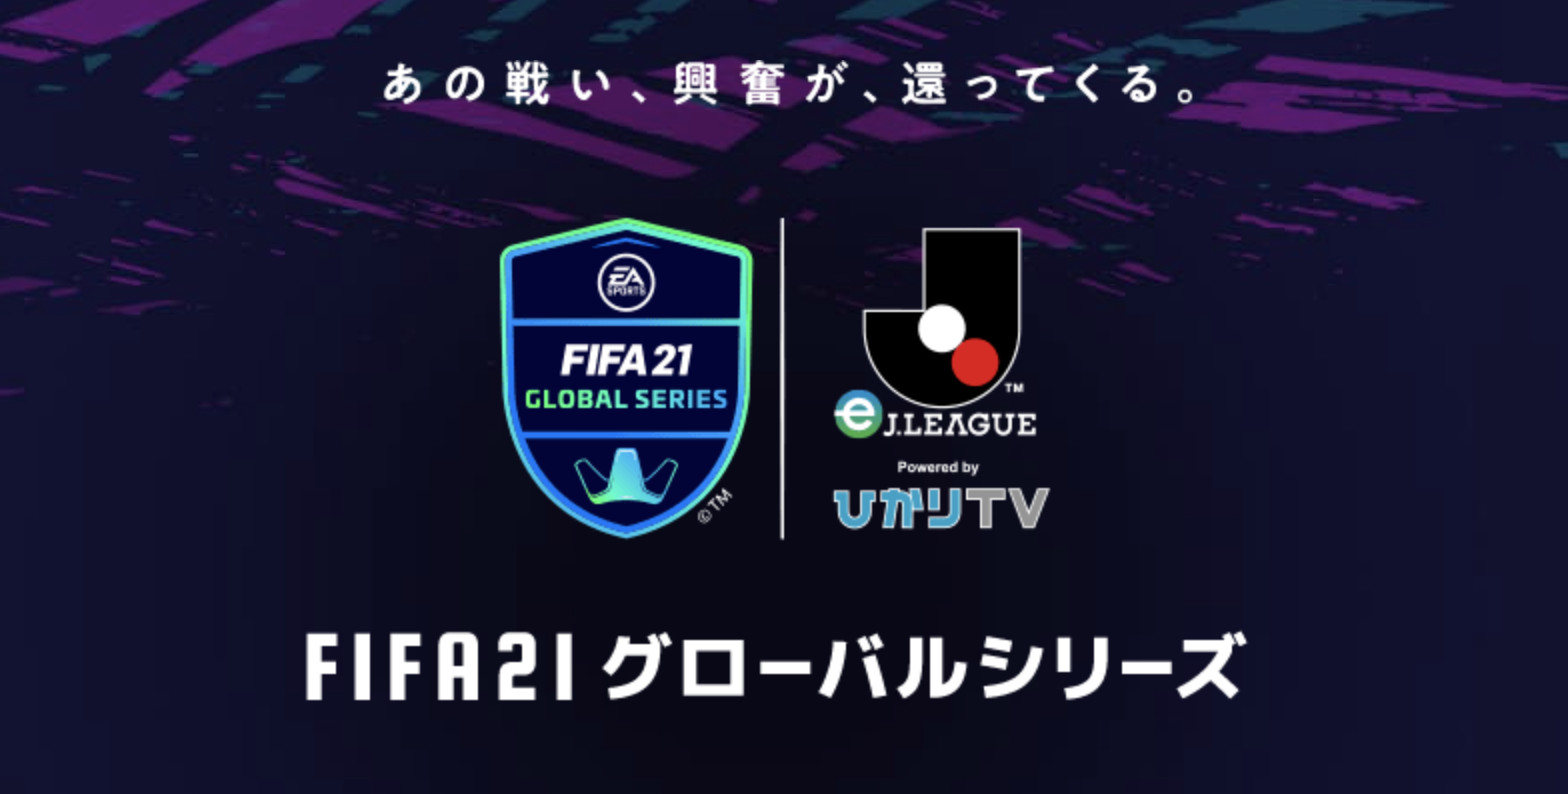 大会情報 Fifa21 グローバルシリーズ Ejリーグ Powered By ひかりtv Futチャンピオンカップ Esports World Eスポーツワールド